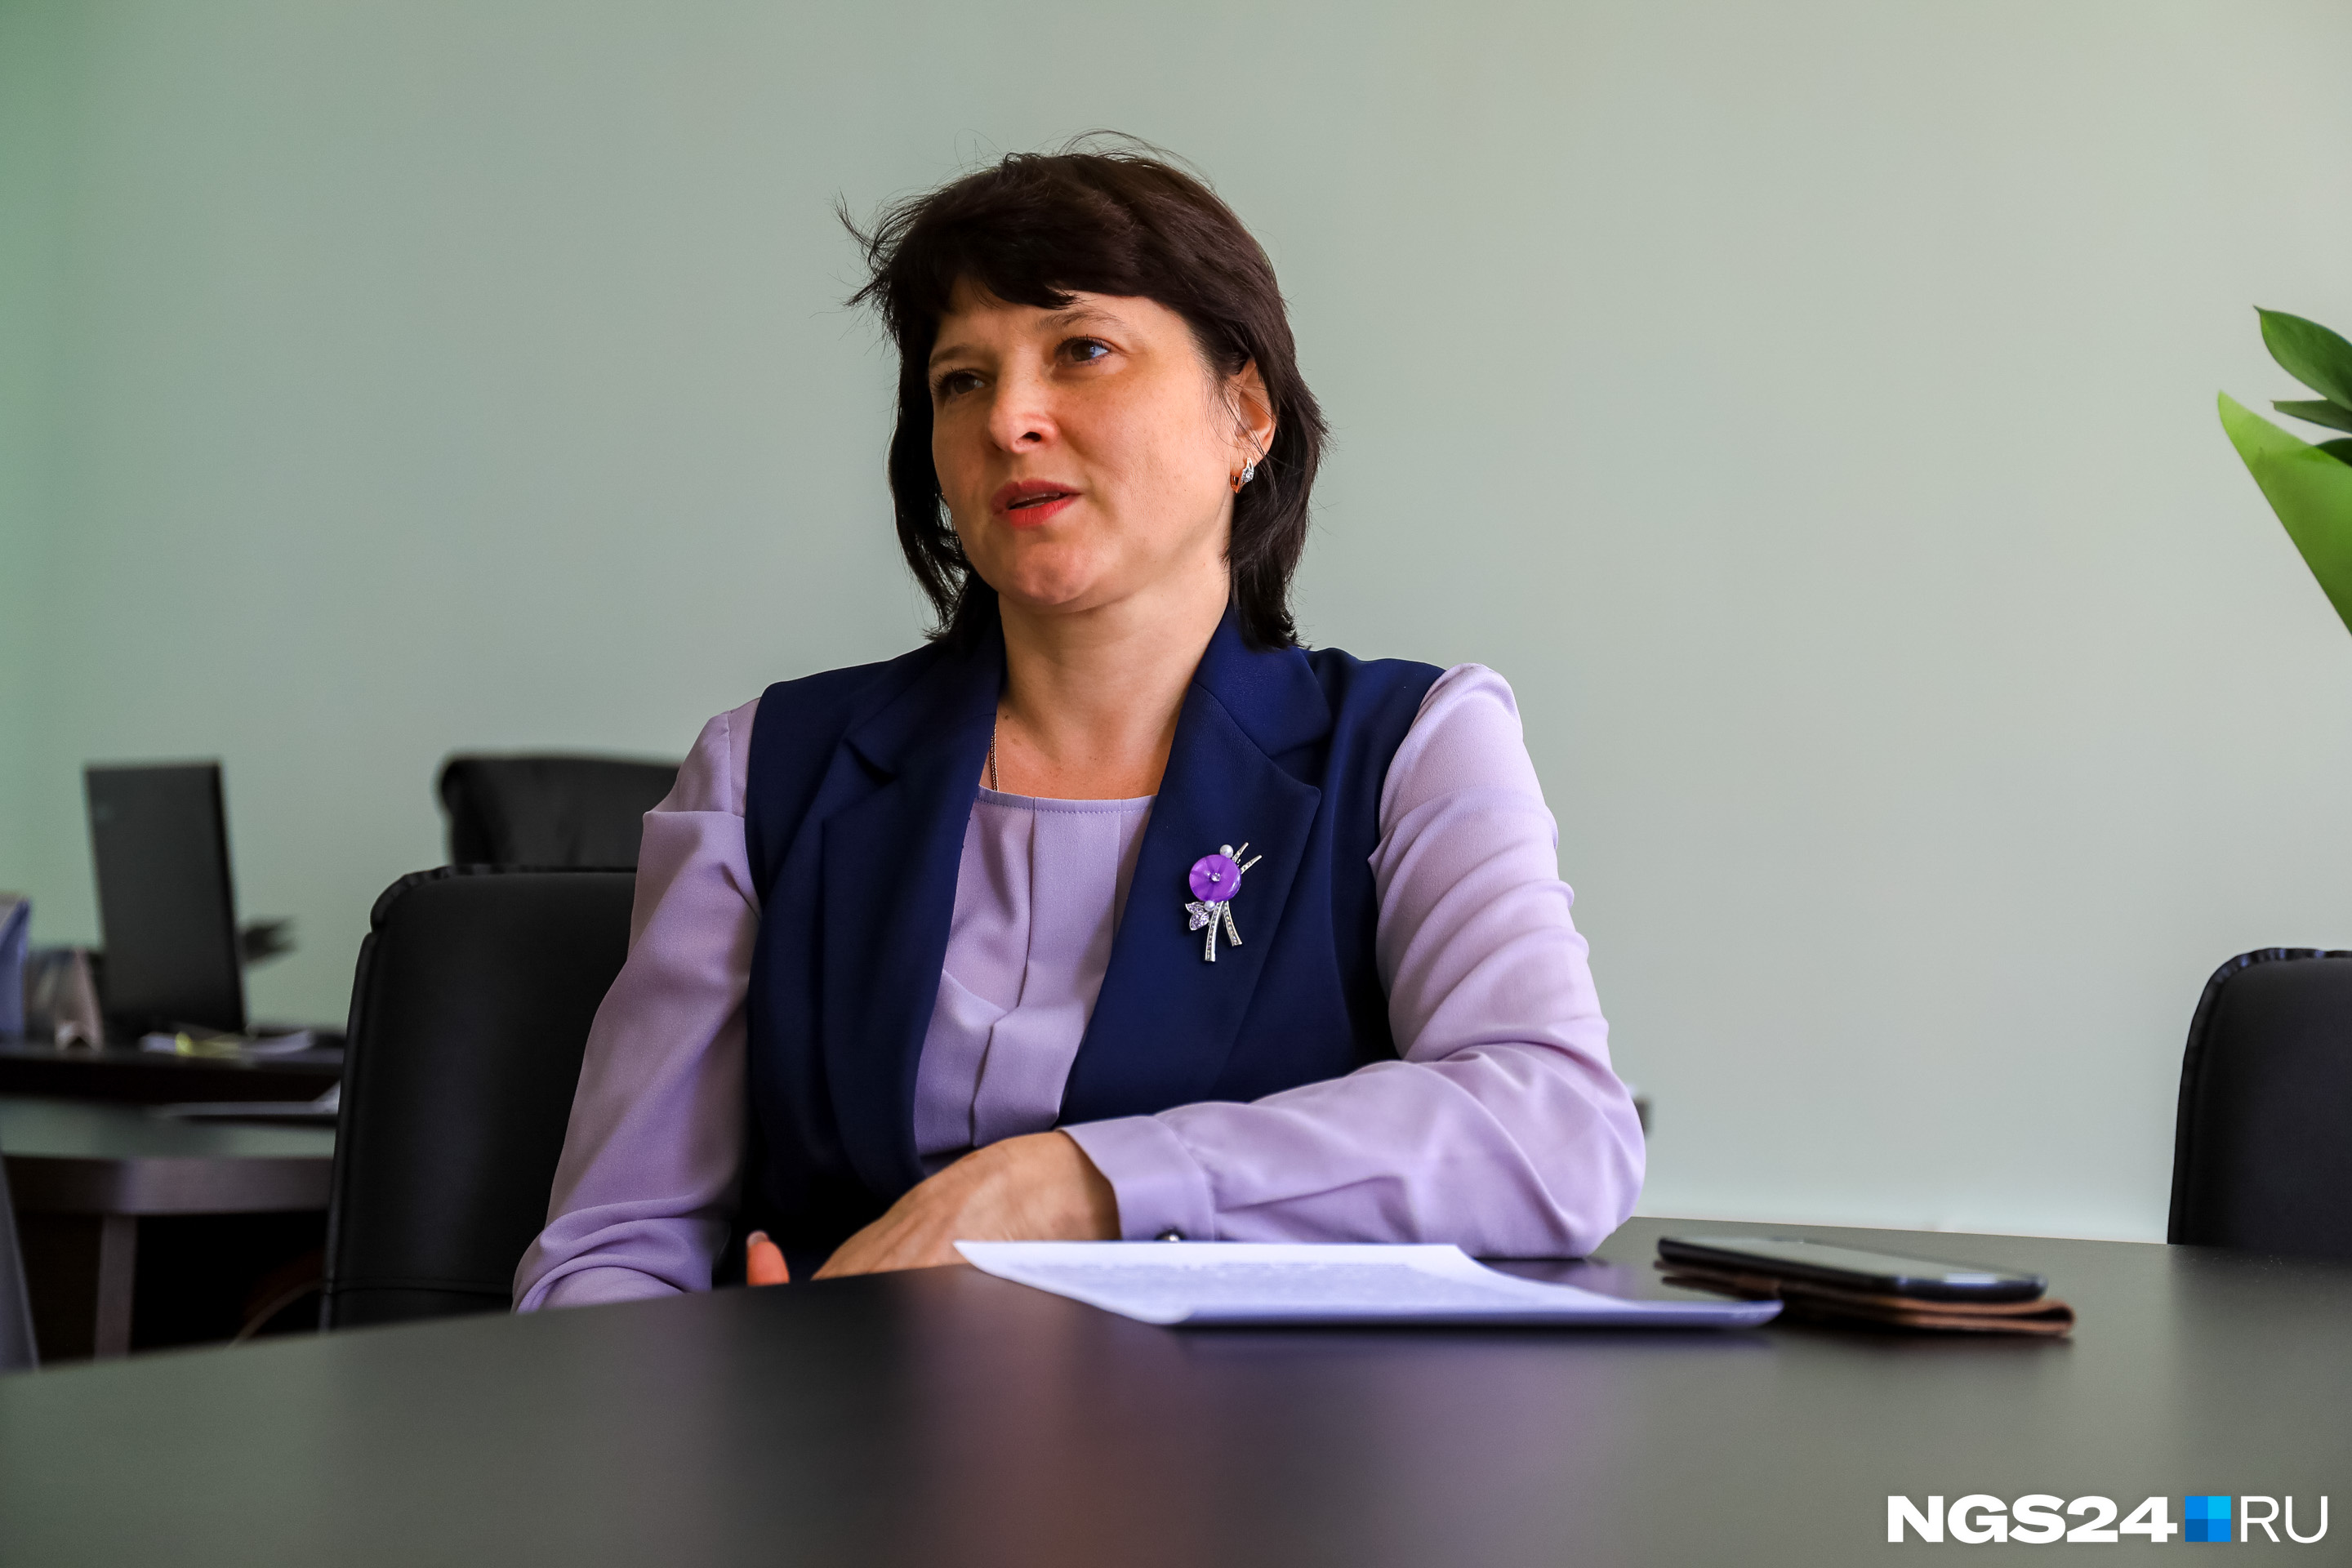 Директор школы Елена Комиссарова хочет сделать все кабинеты школы максимально полезными для детей